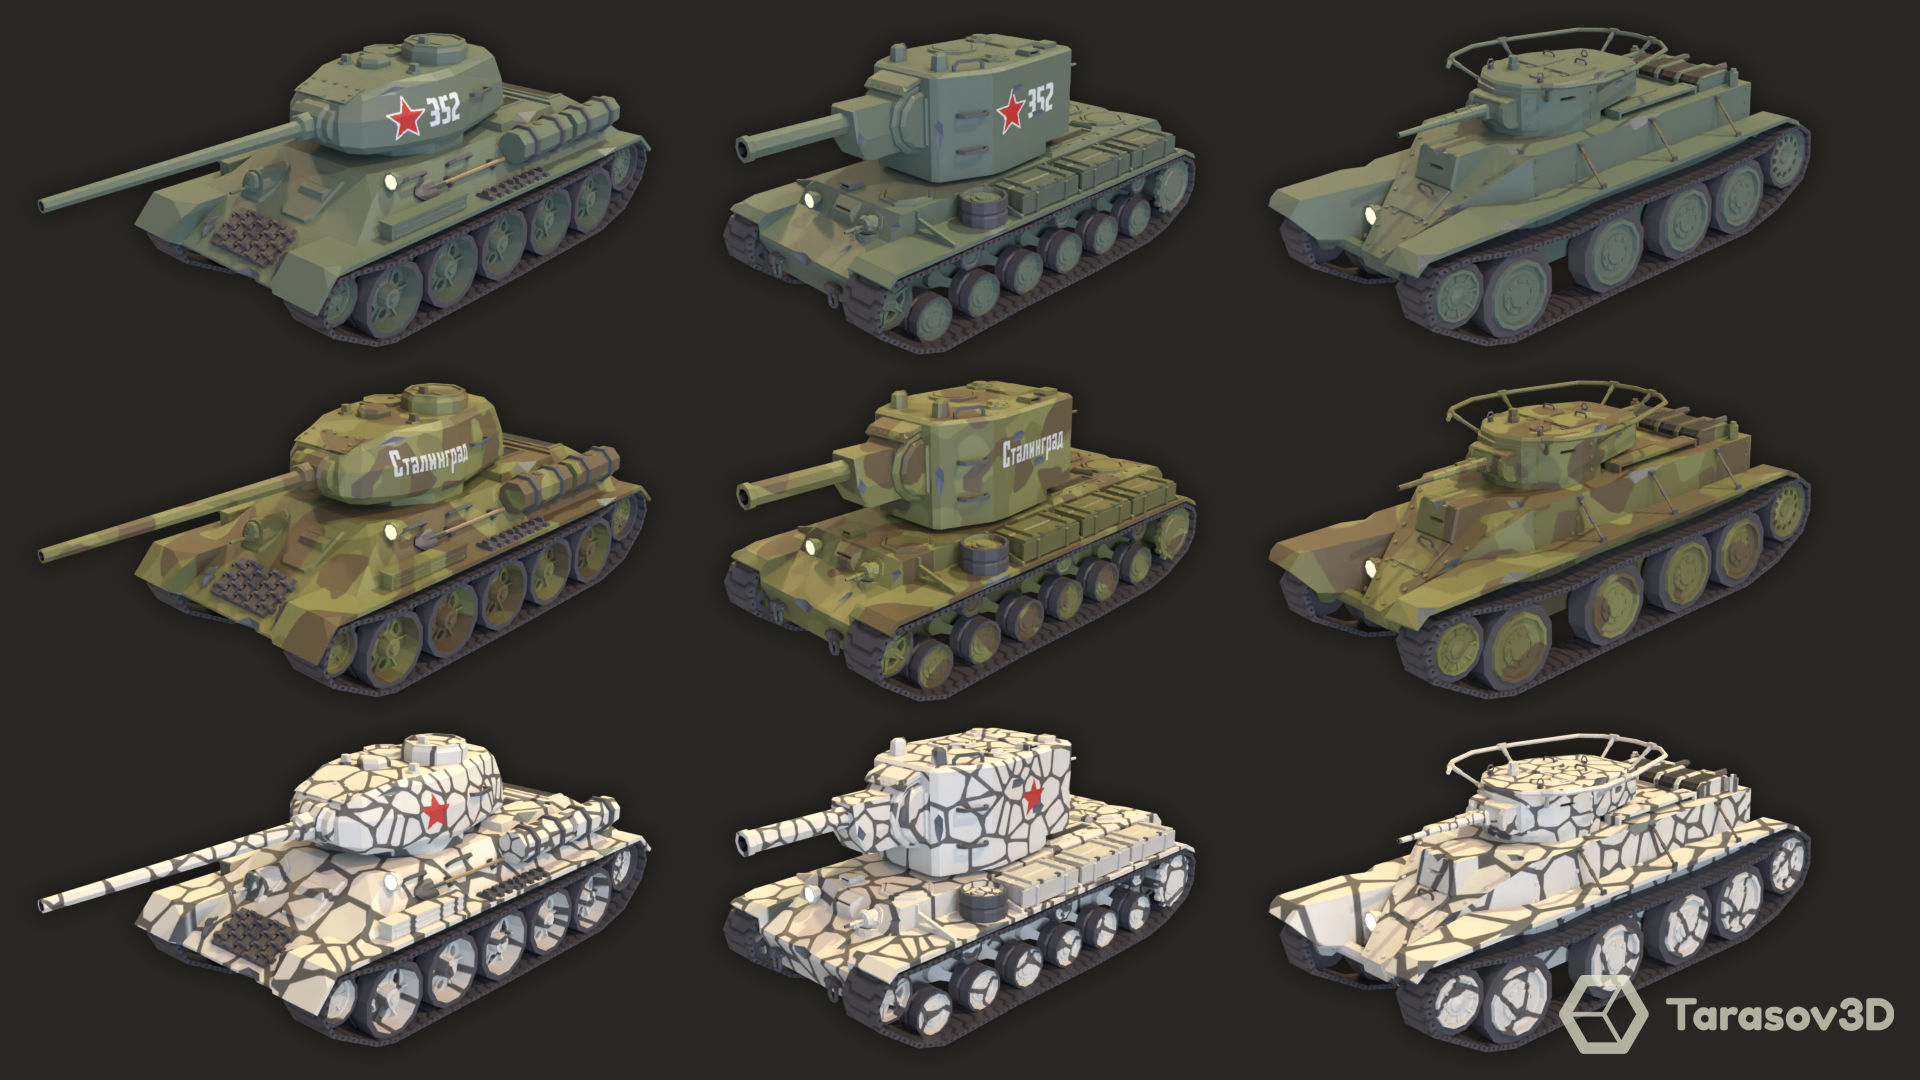 color ww2 tank battle images